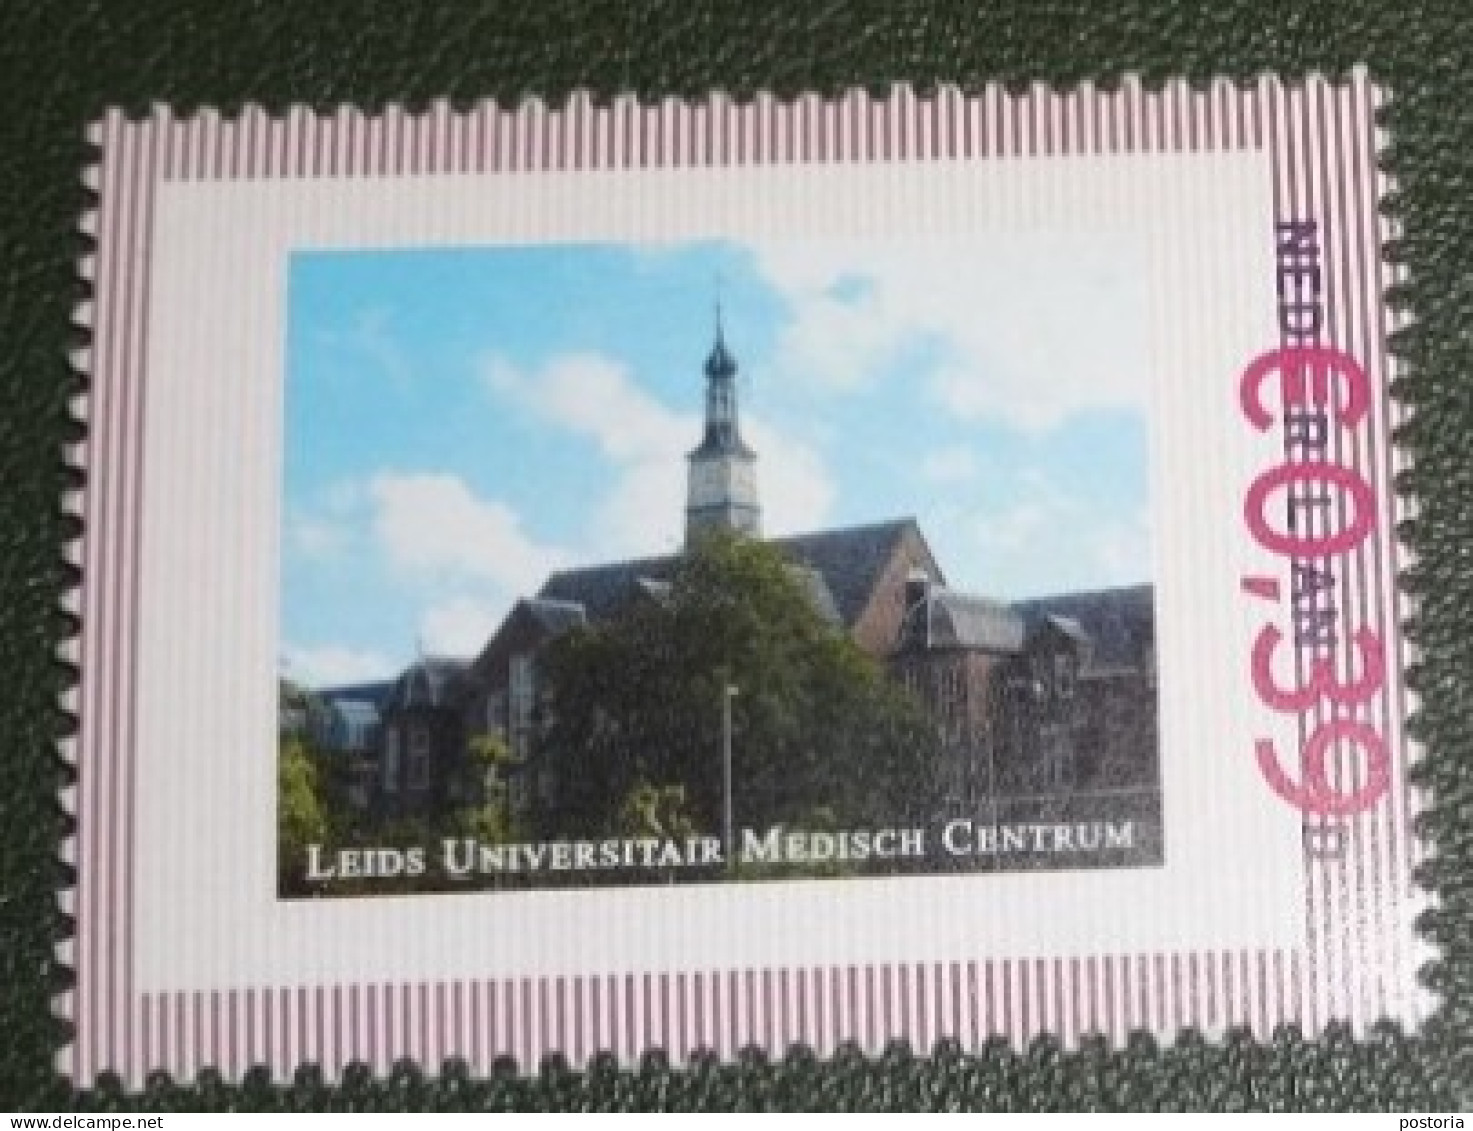 Nederland - NVPH - Persoonlijke - Postfris - MNH - Leids Universitair Medisch Centrum - LUMC - Personalisierte Briefmarken